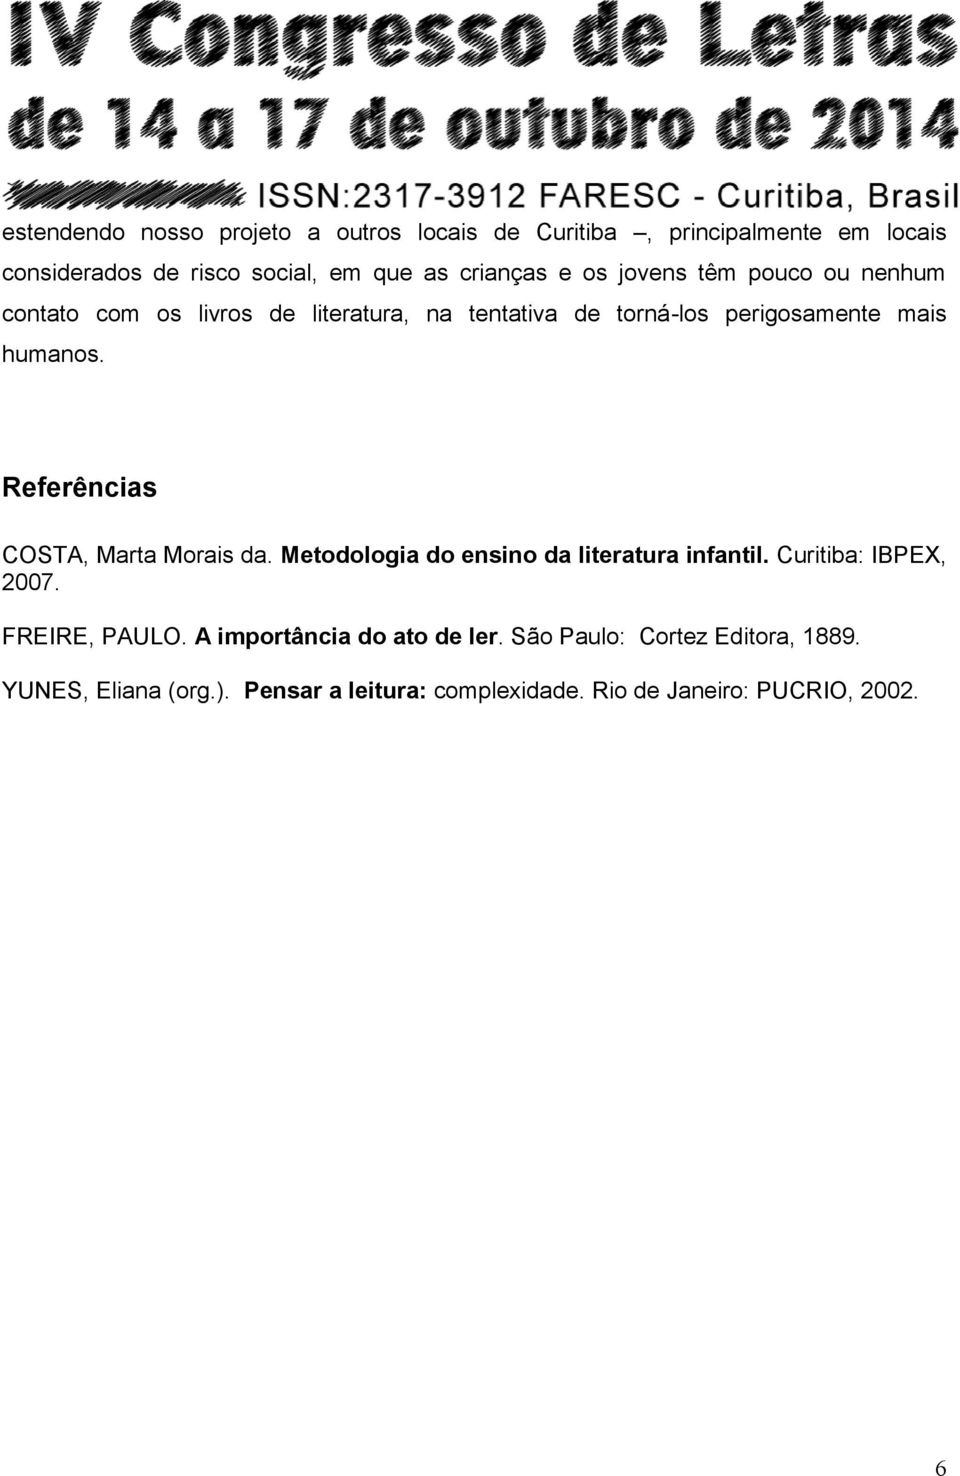 Referências COSTA, Marta Morais da. Metodologia do ensino da literatura infantil. Curitiba: IBPEX, 2007. FREIRE, PAULO.